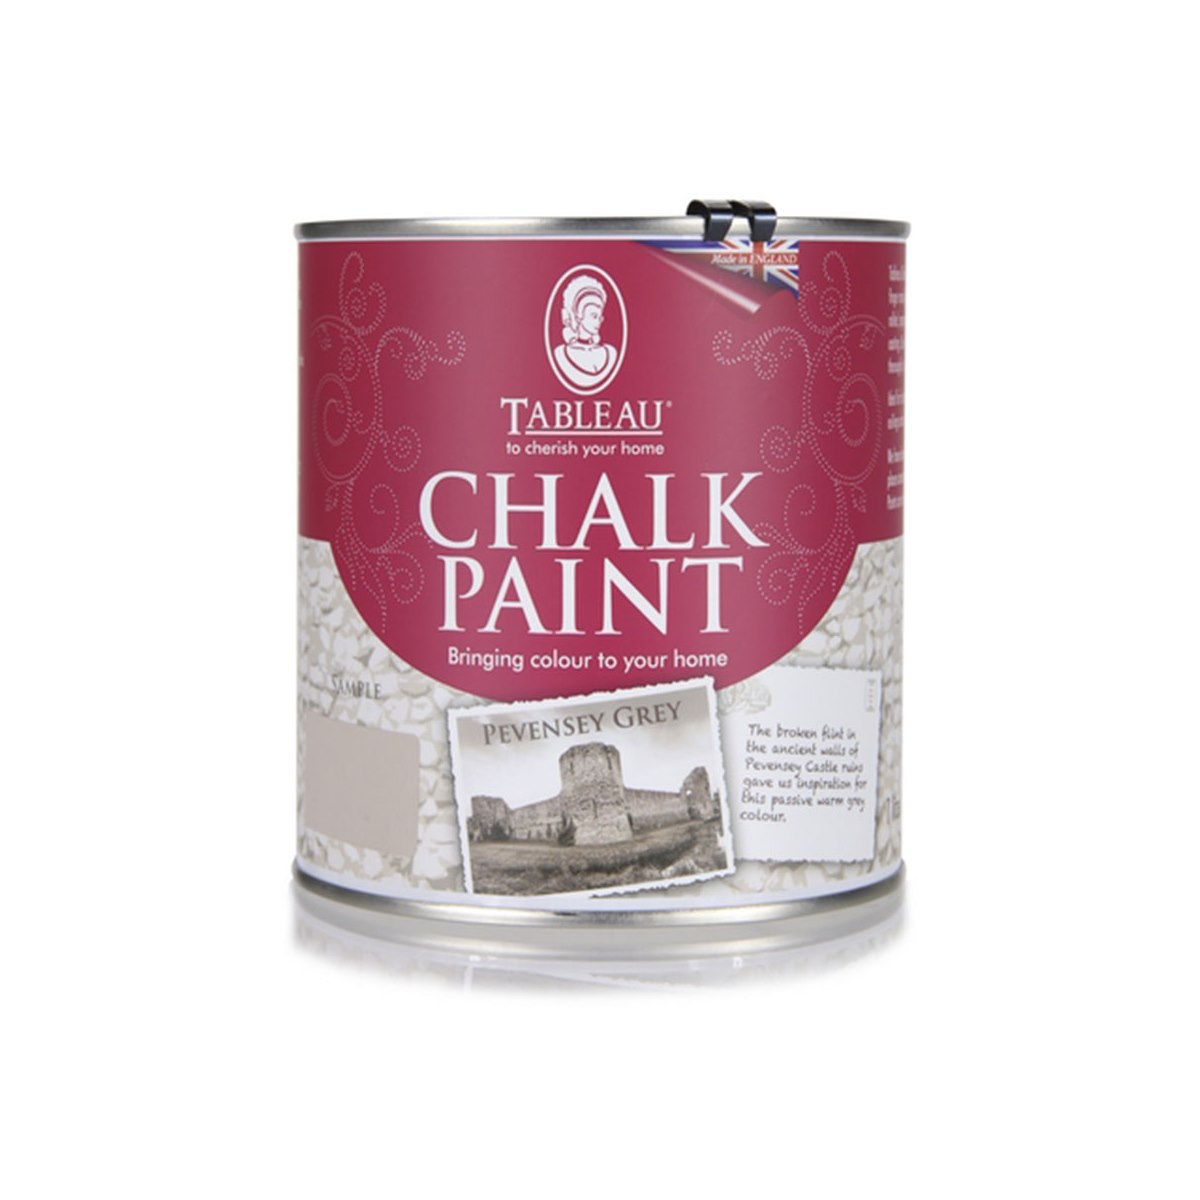 Tableau Chalk Paint Pevensey Grey 1 Litre